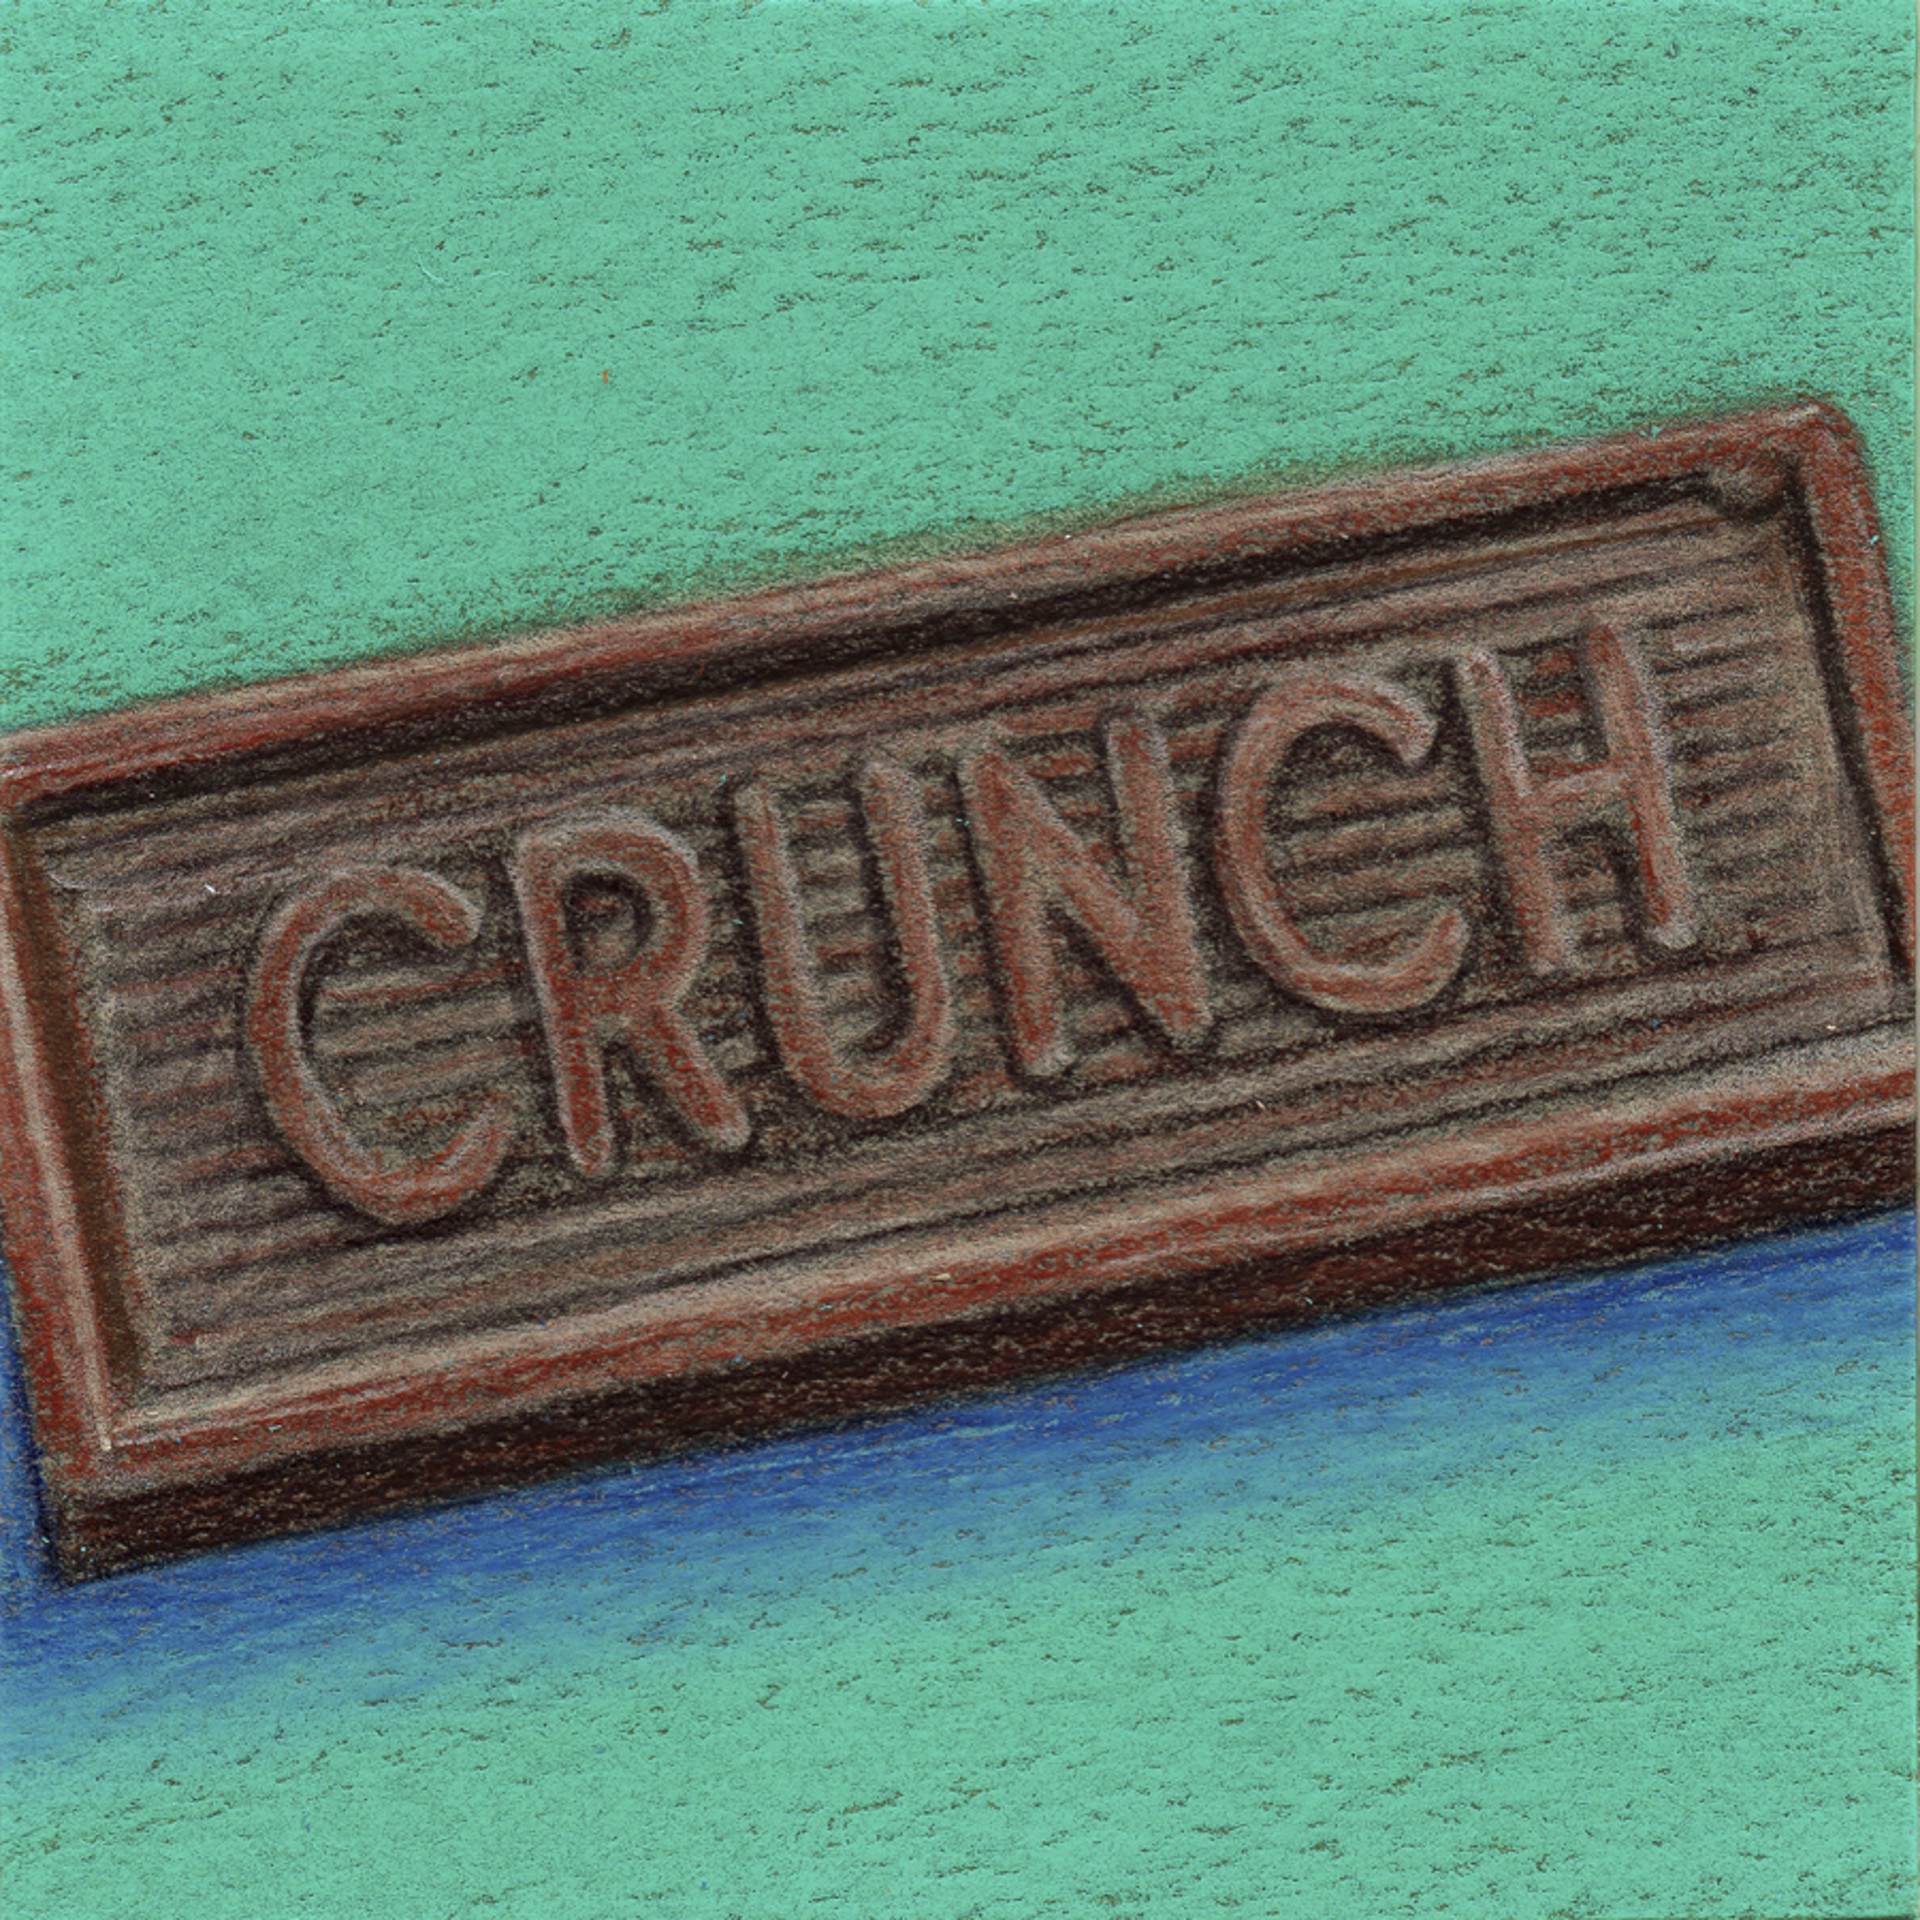 Crunch by Neva Mikulicz